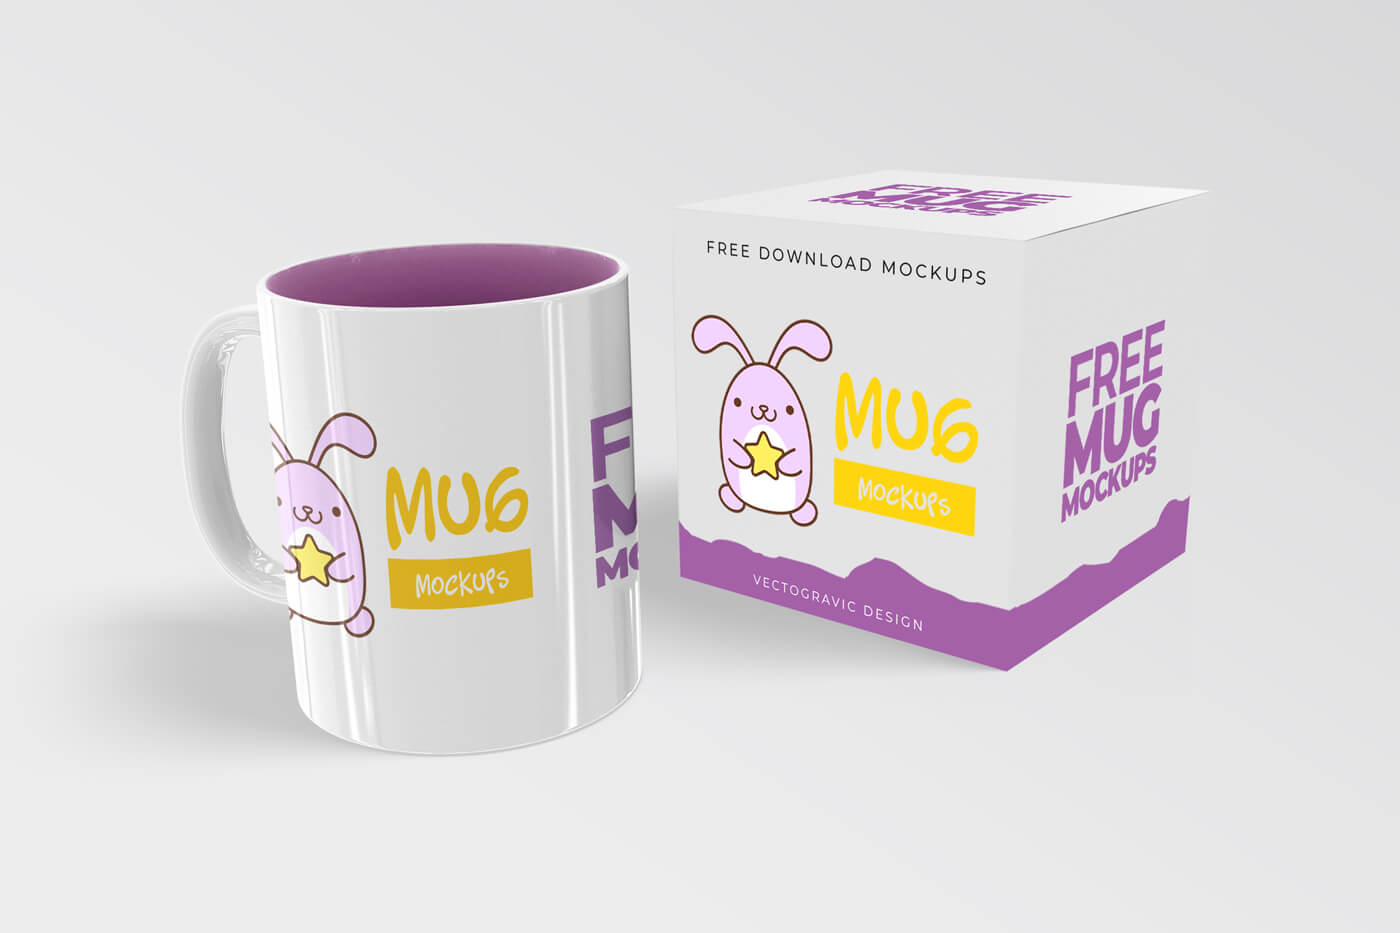  Free Mug Mockups 